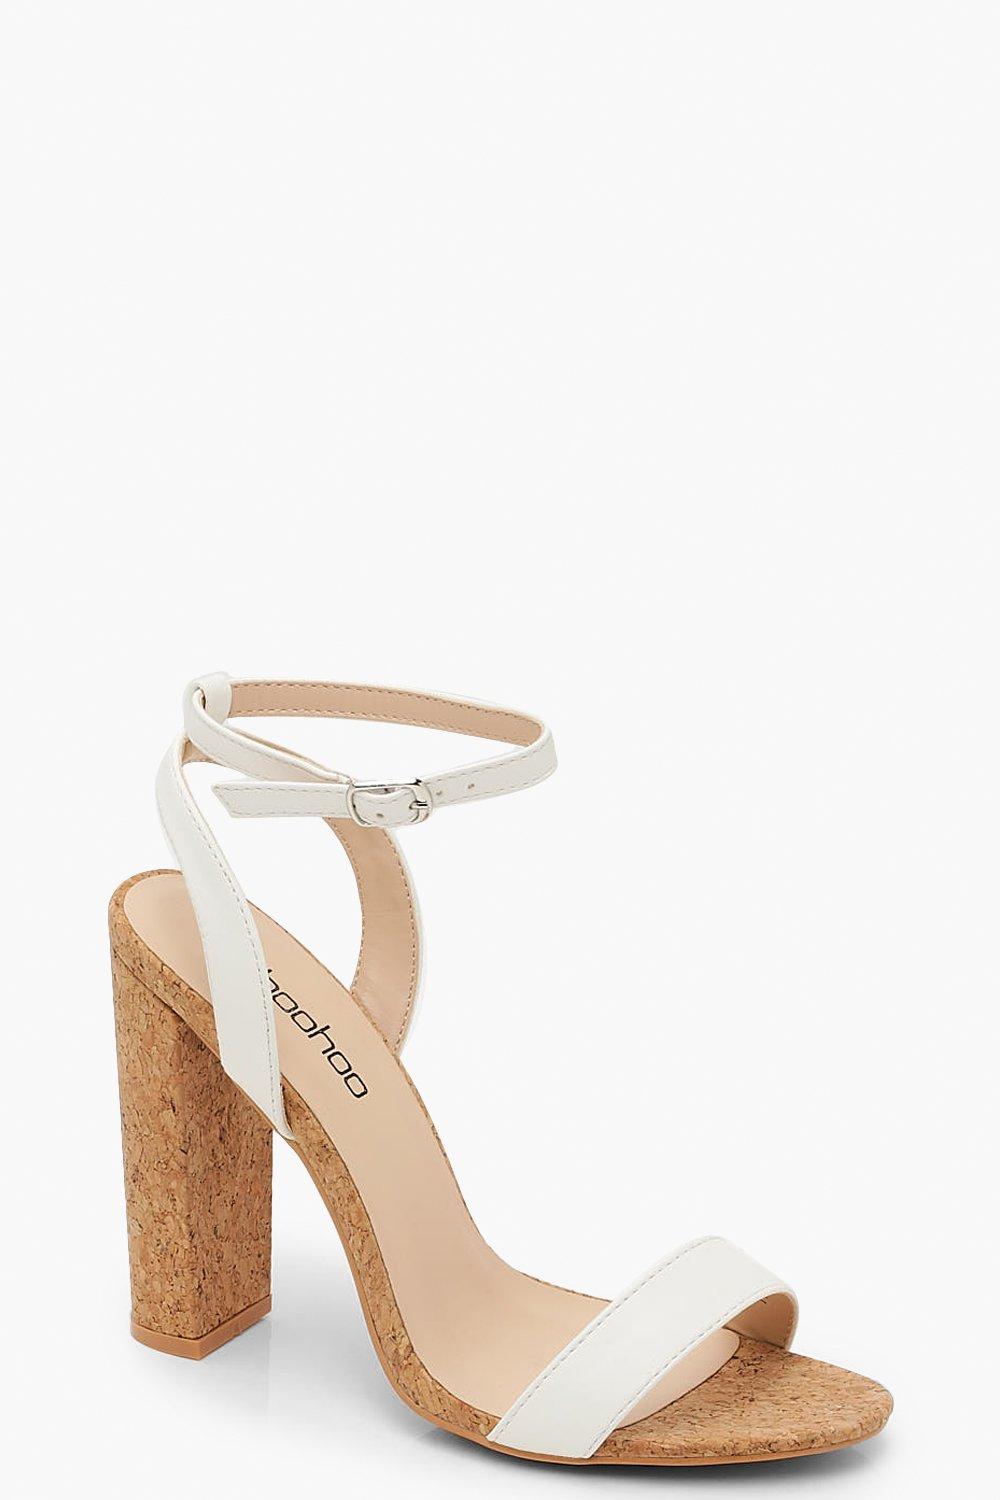 white cork heels